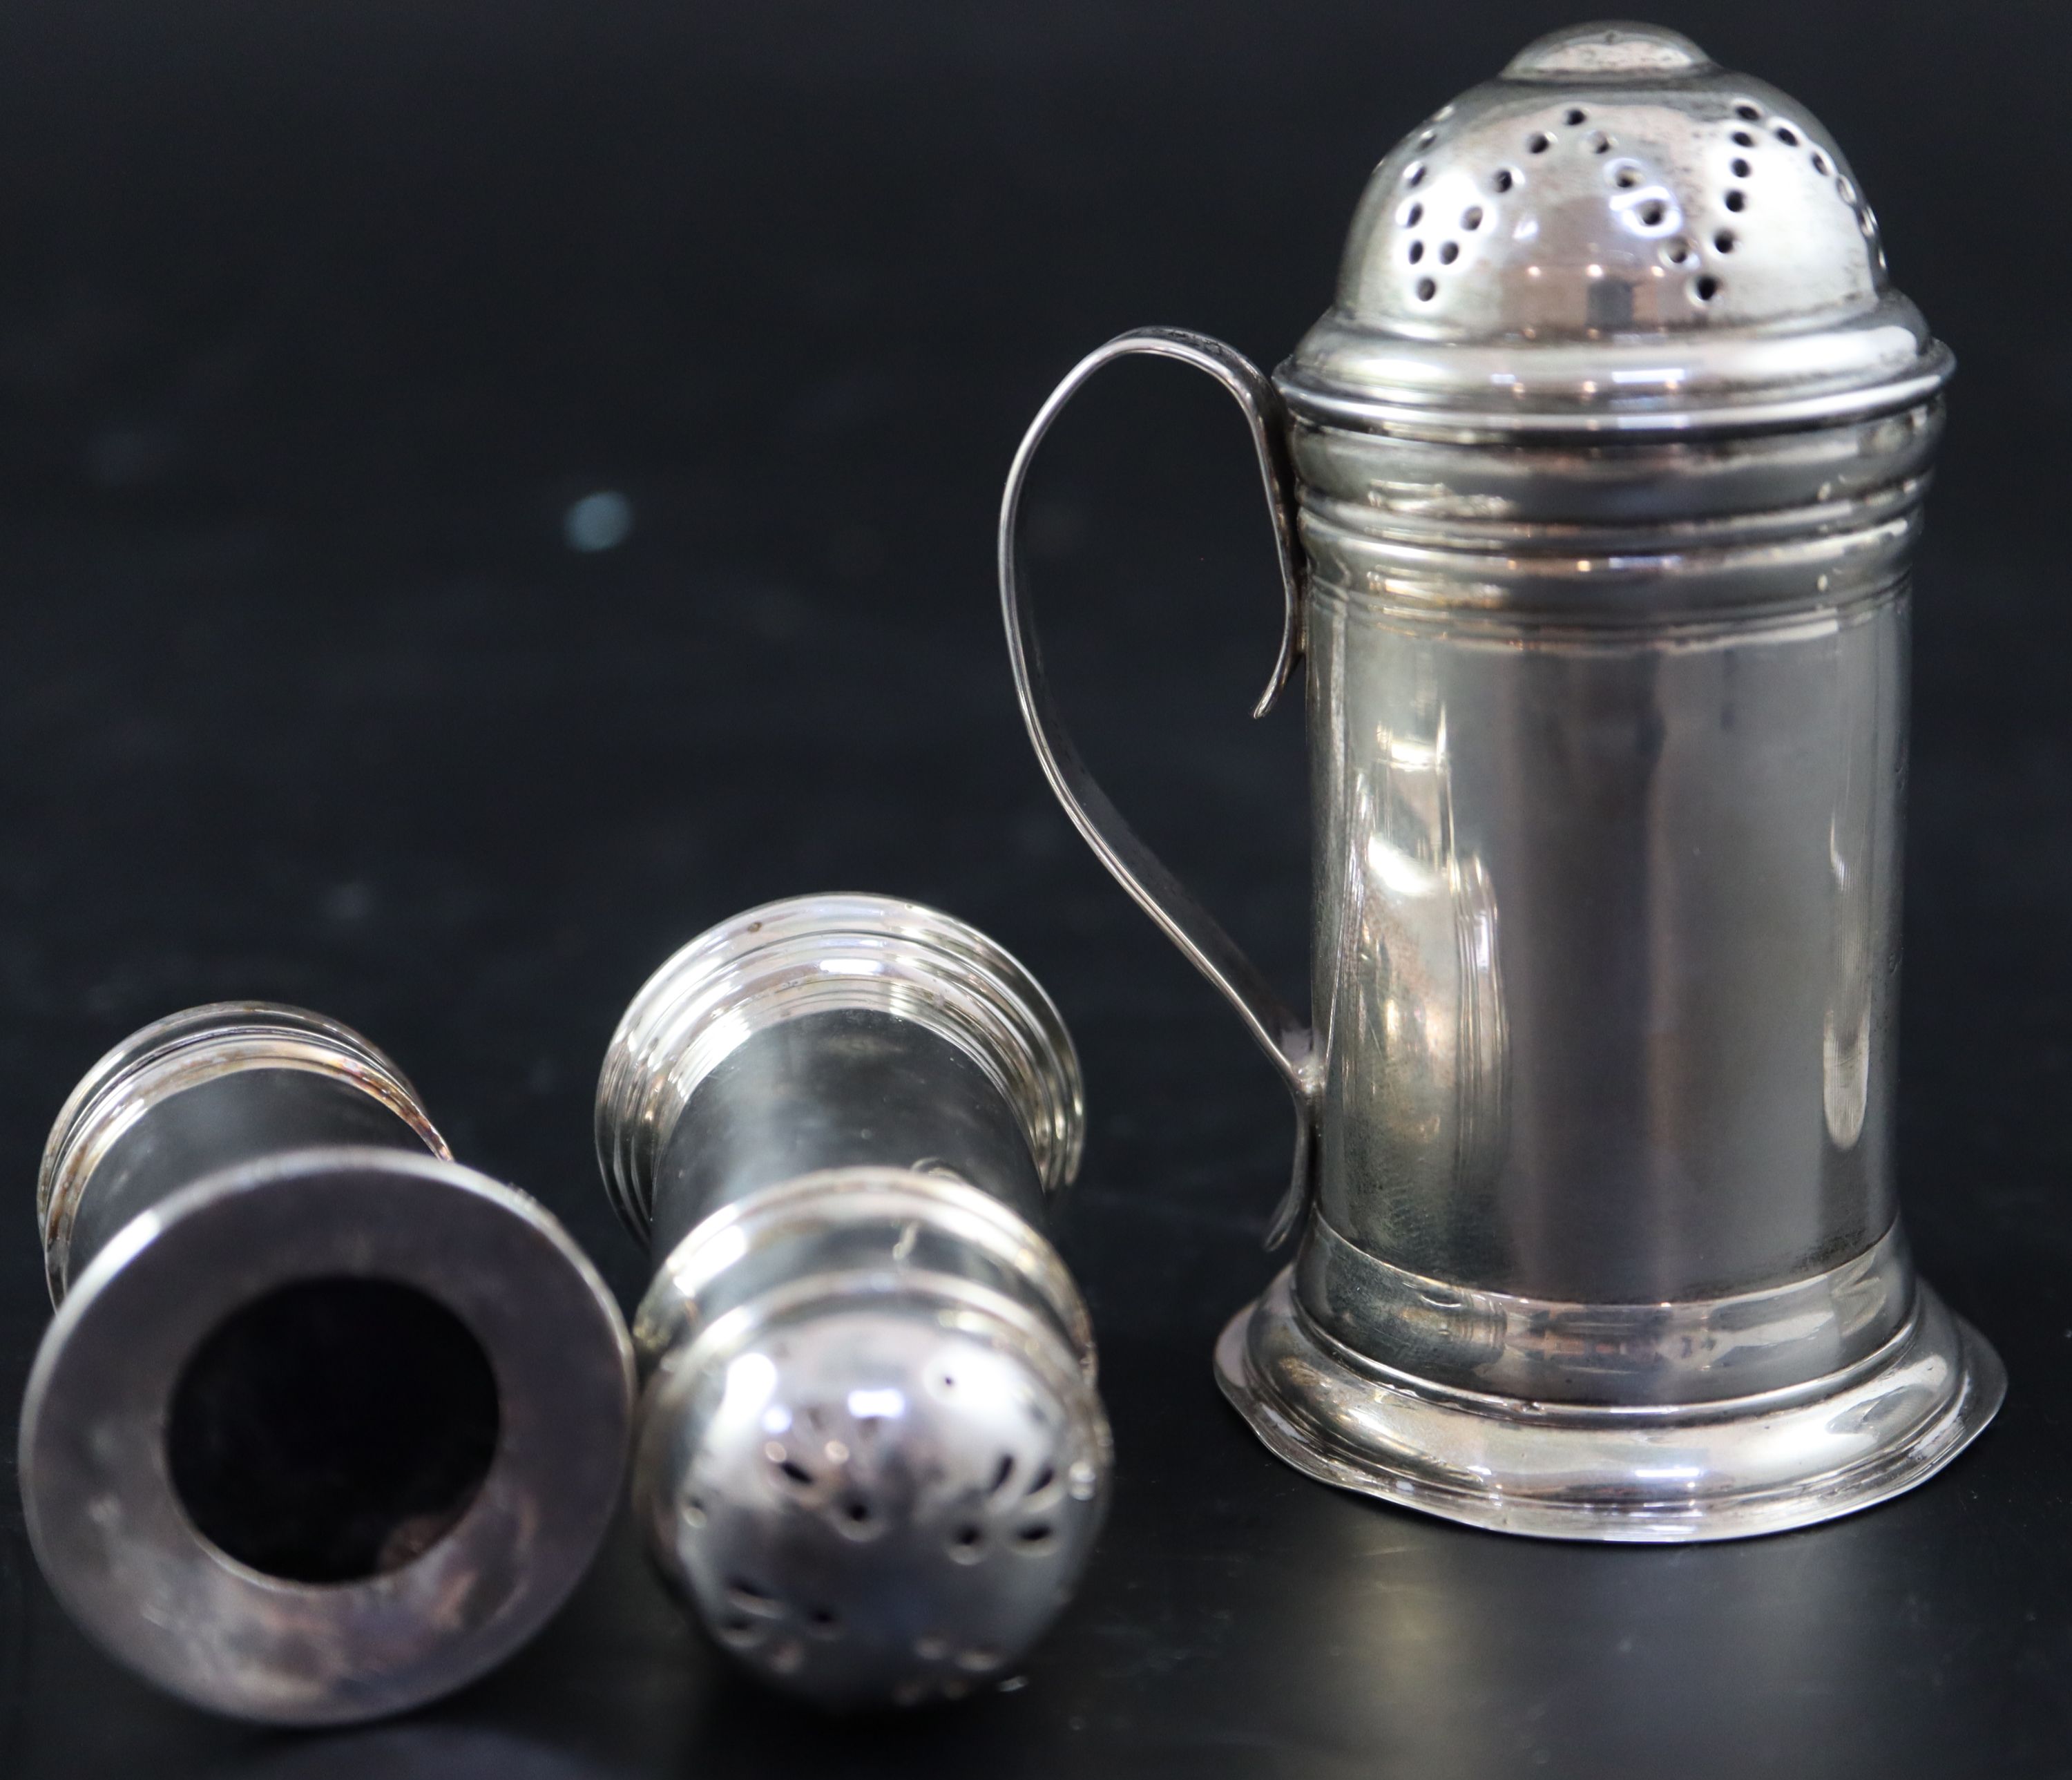 A George II silver kitchen pepper,